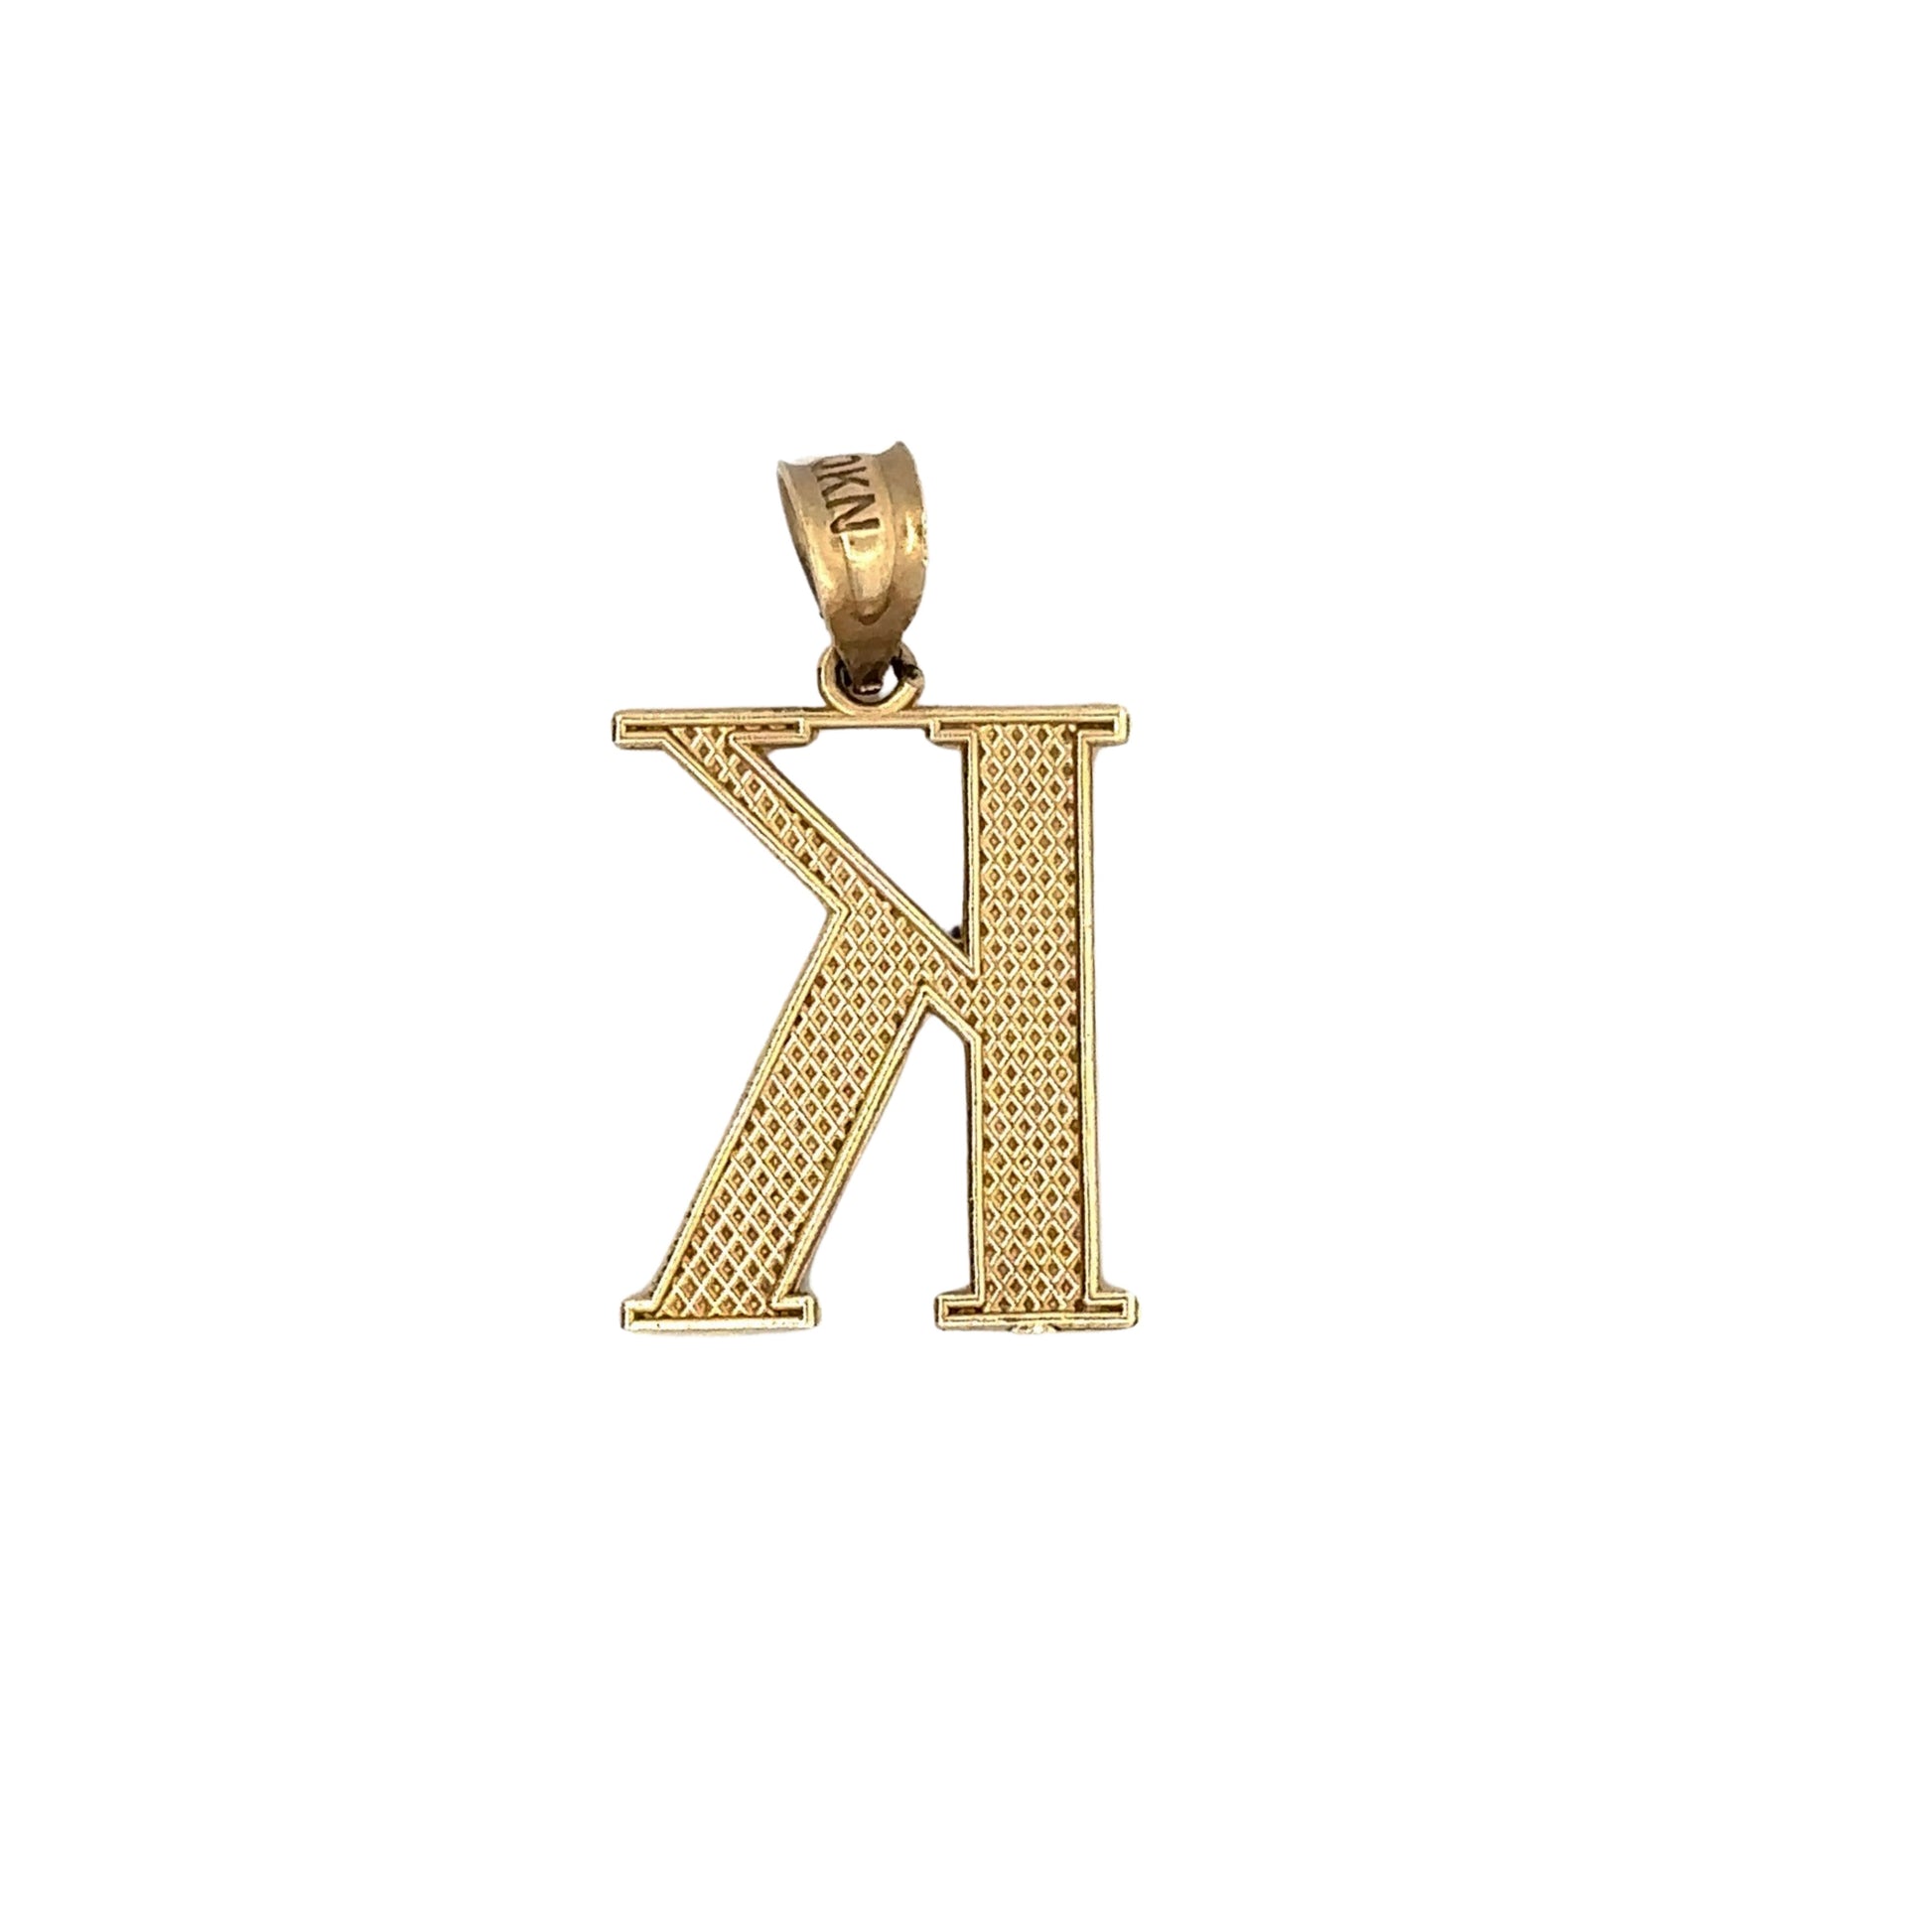 back of k pendant